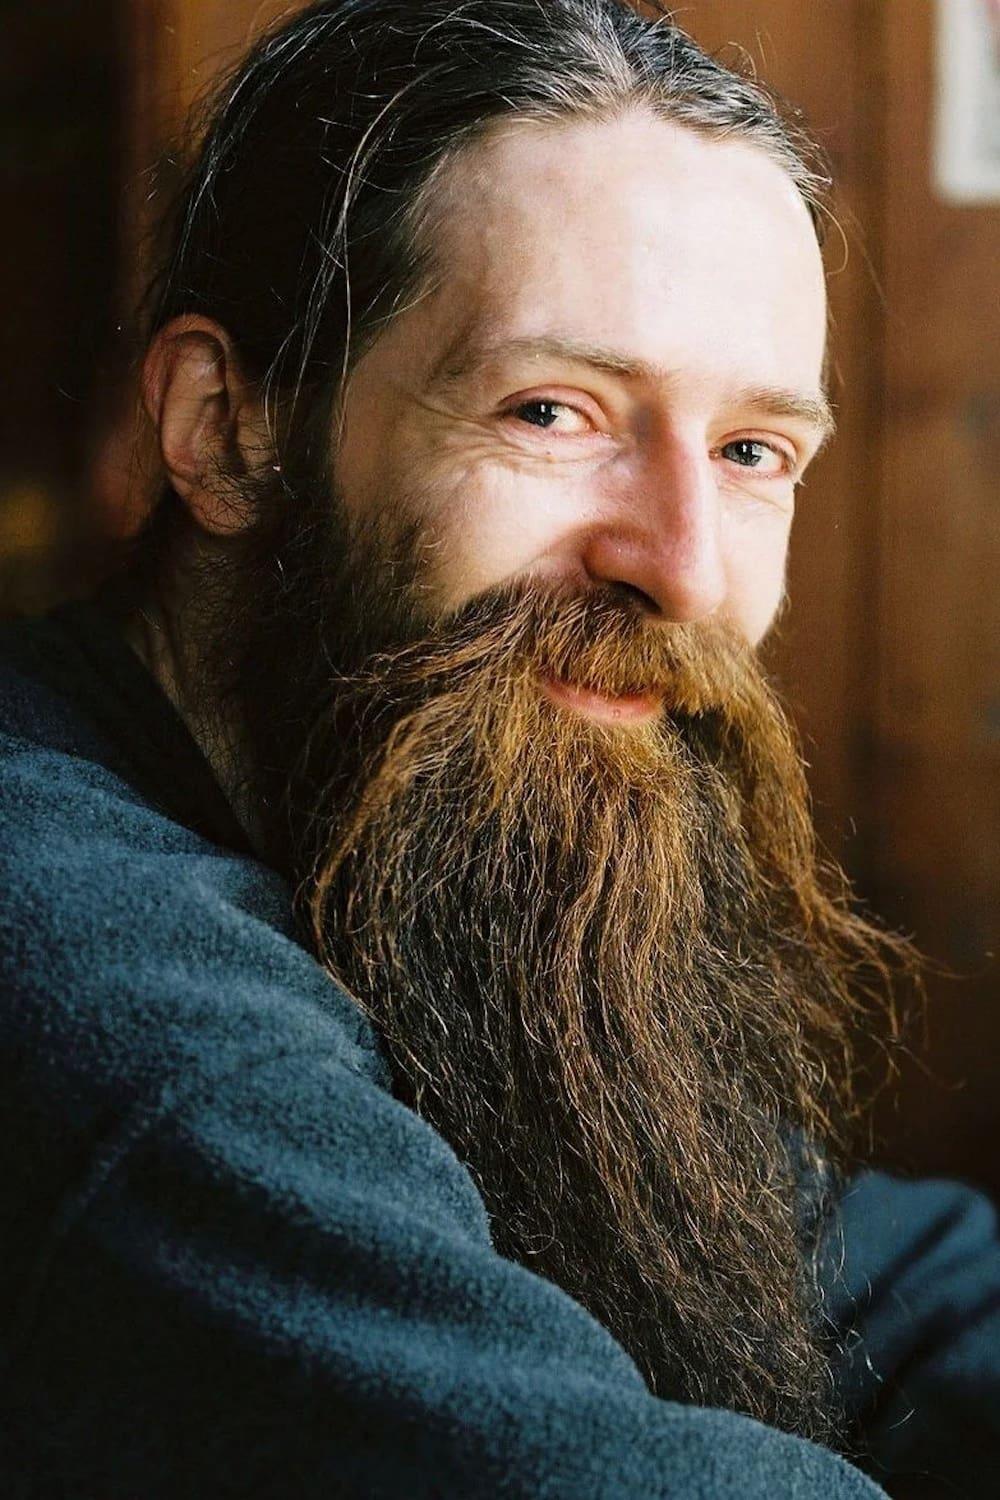 Aubrey de Grey | Self